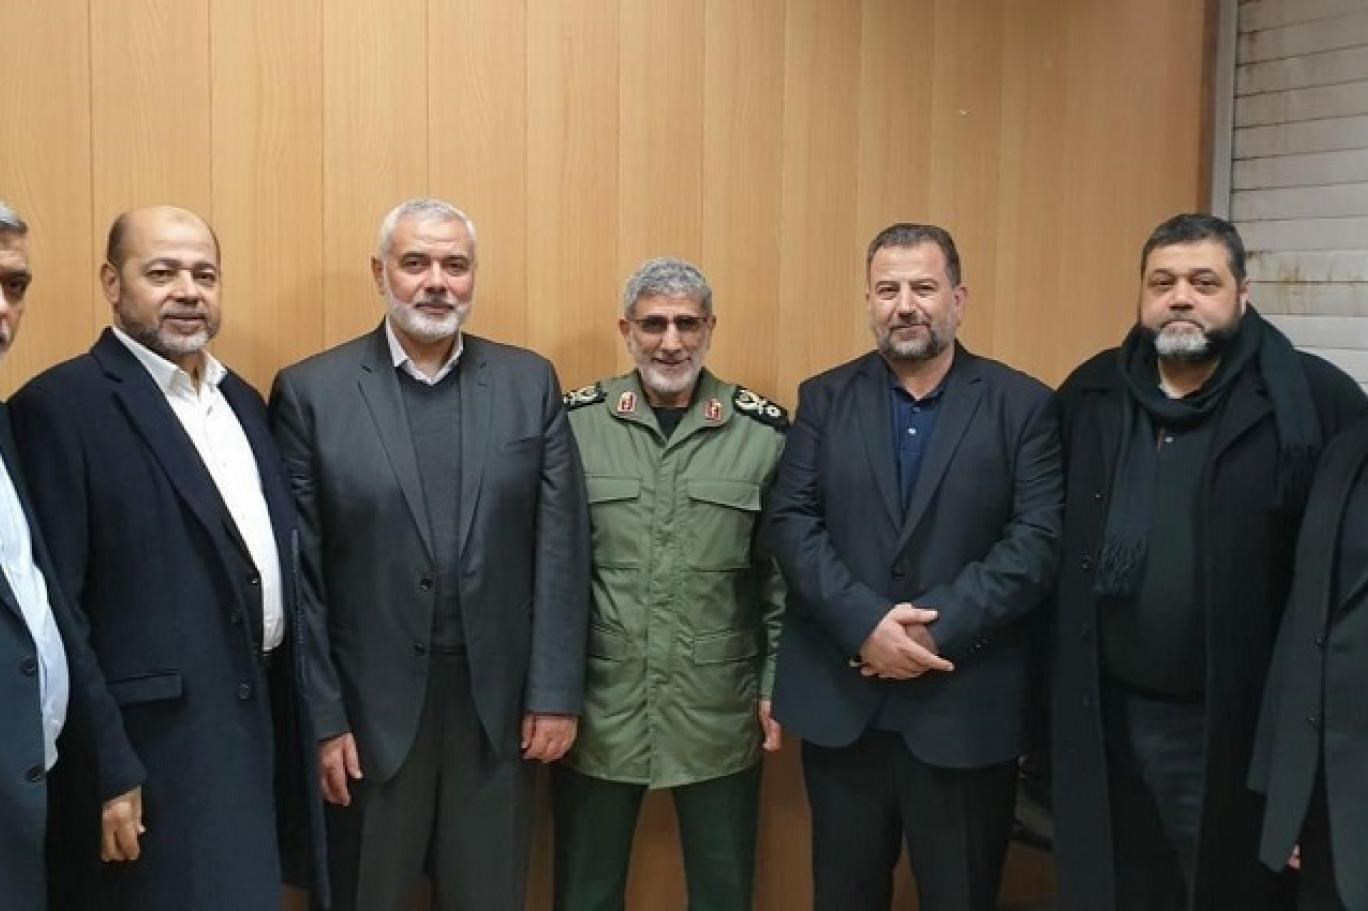 رئيس المكتب السياسي لحركة "حماس" إسماعيل هنية إلى جانب قائد قوة القدس إسماعيل قاآني